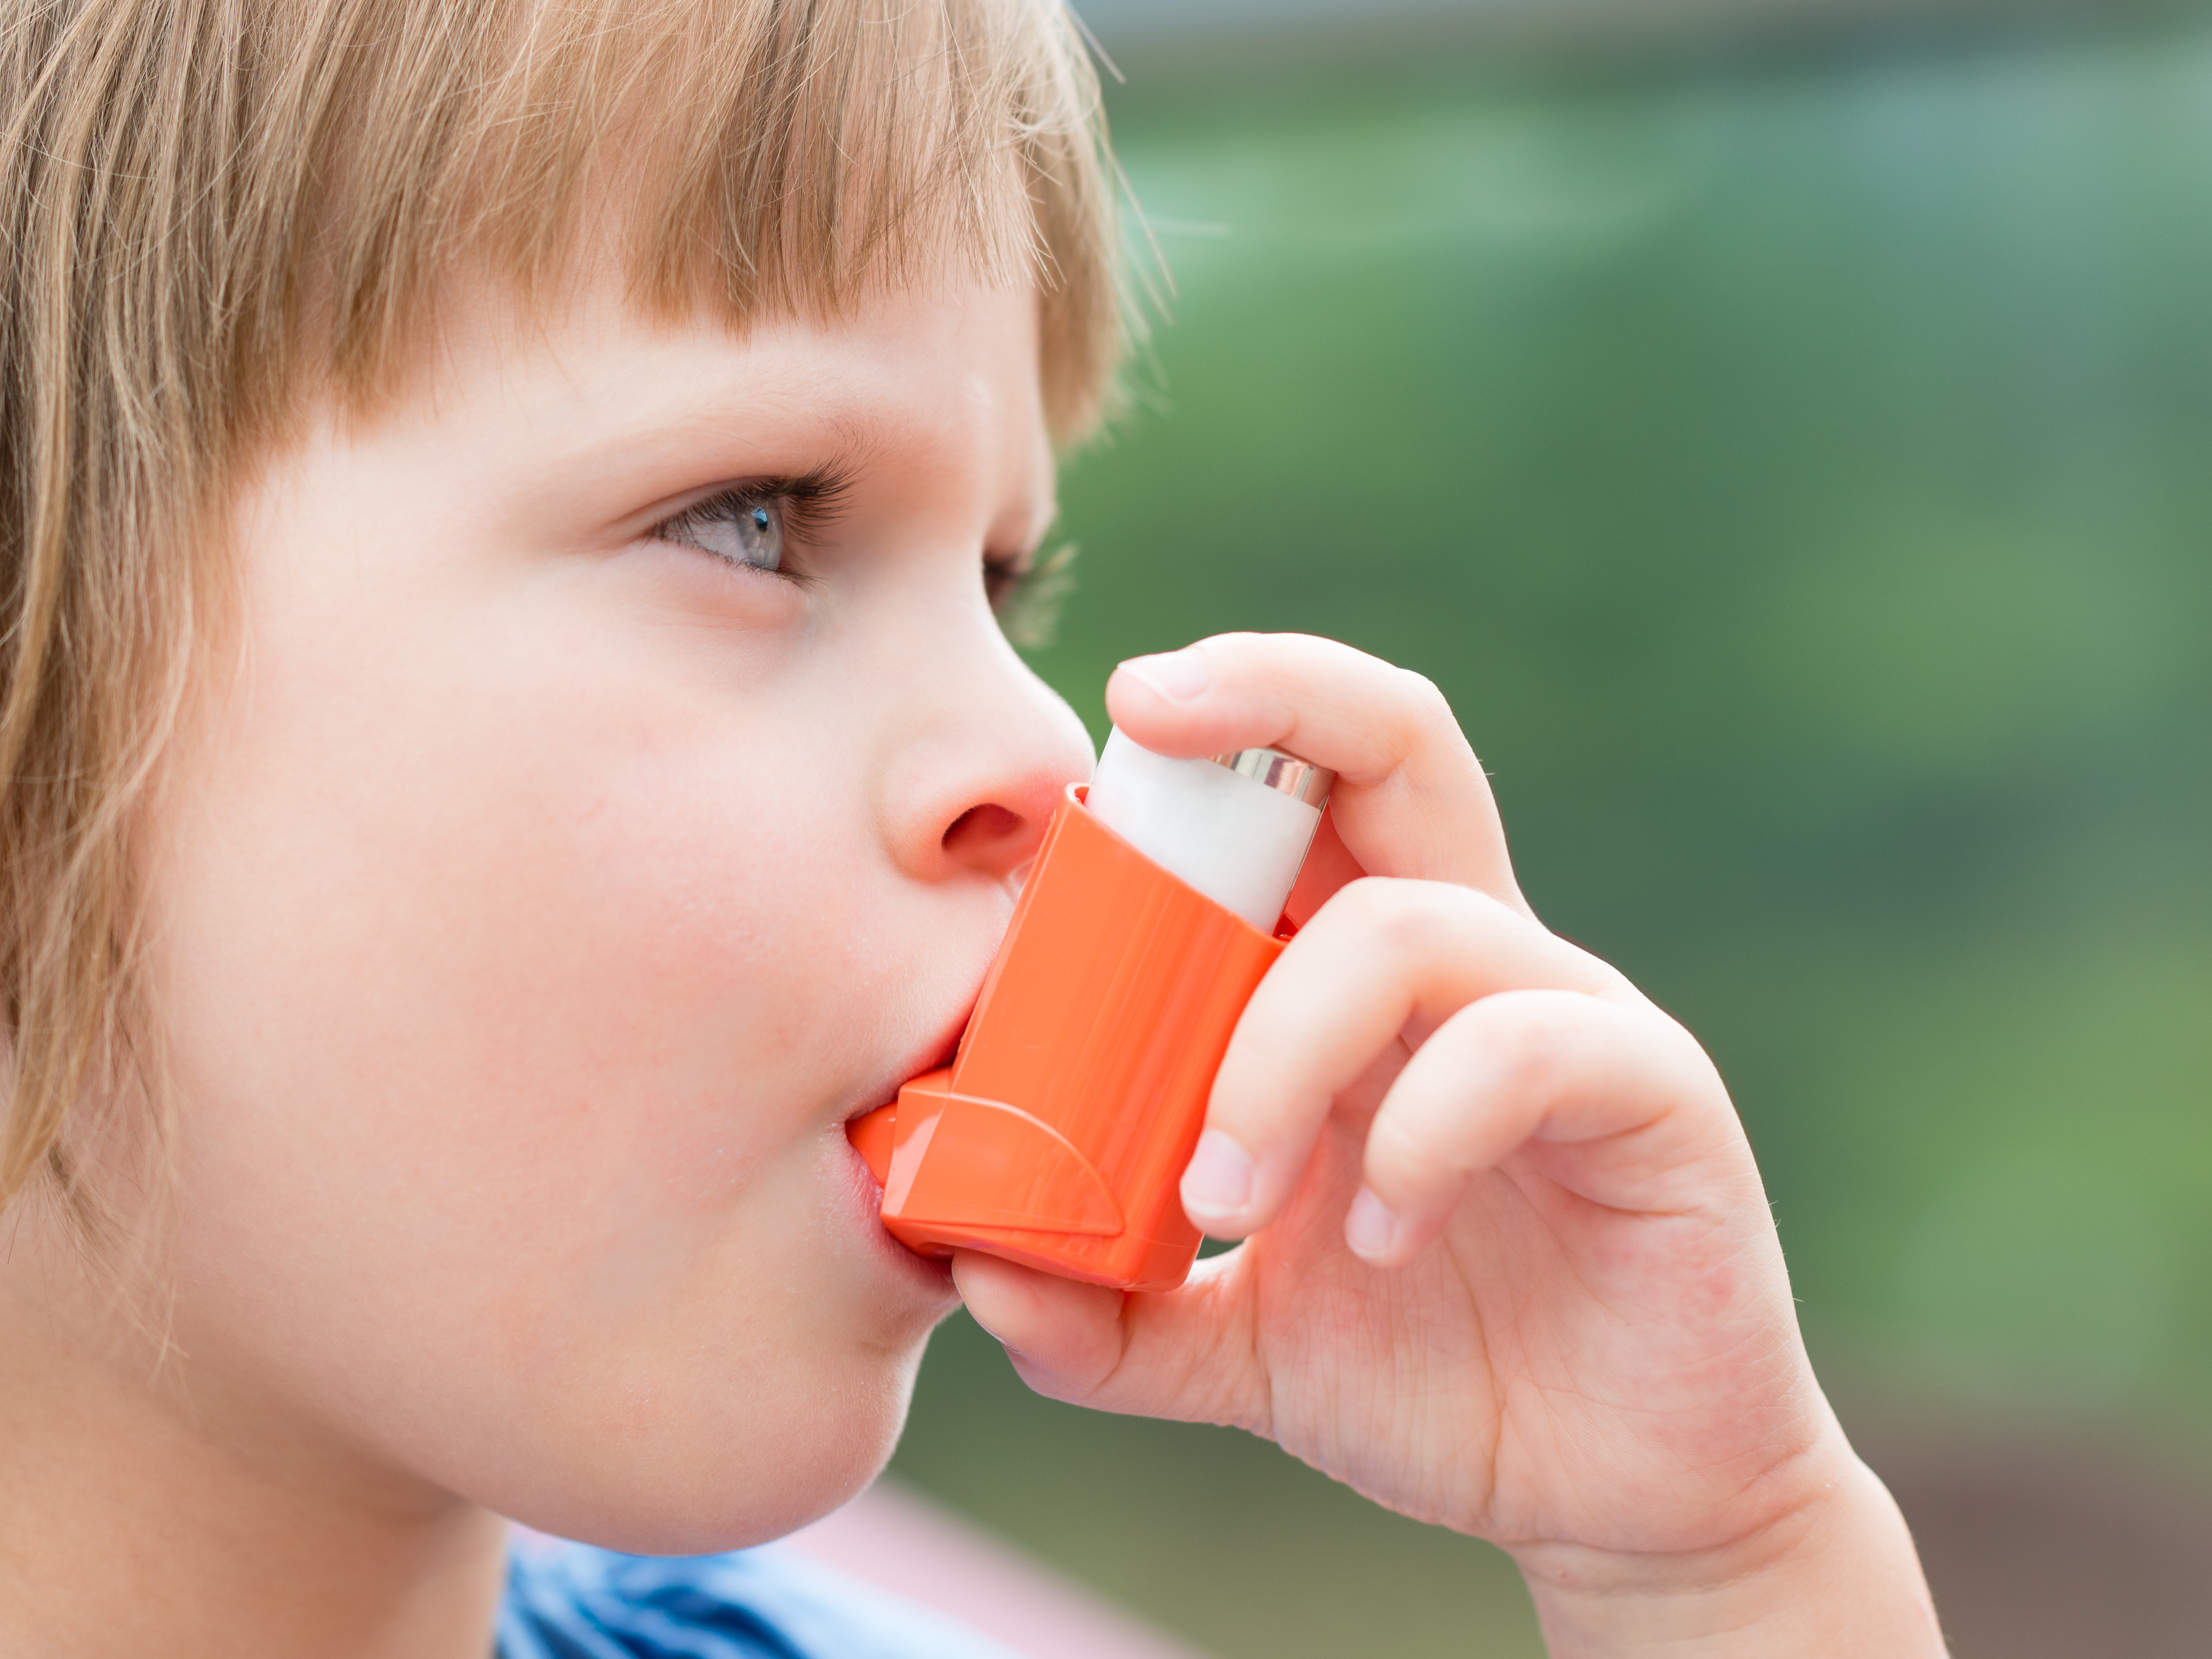 A asma acomete cerca de 15% das crianças e dos jovens  (Foto: Thinkstock)